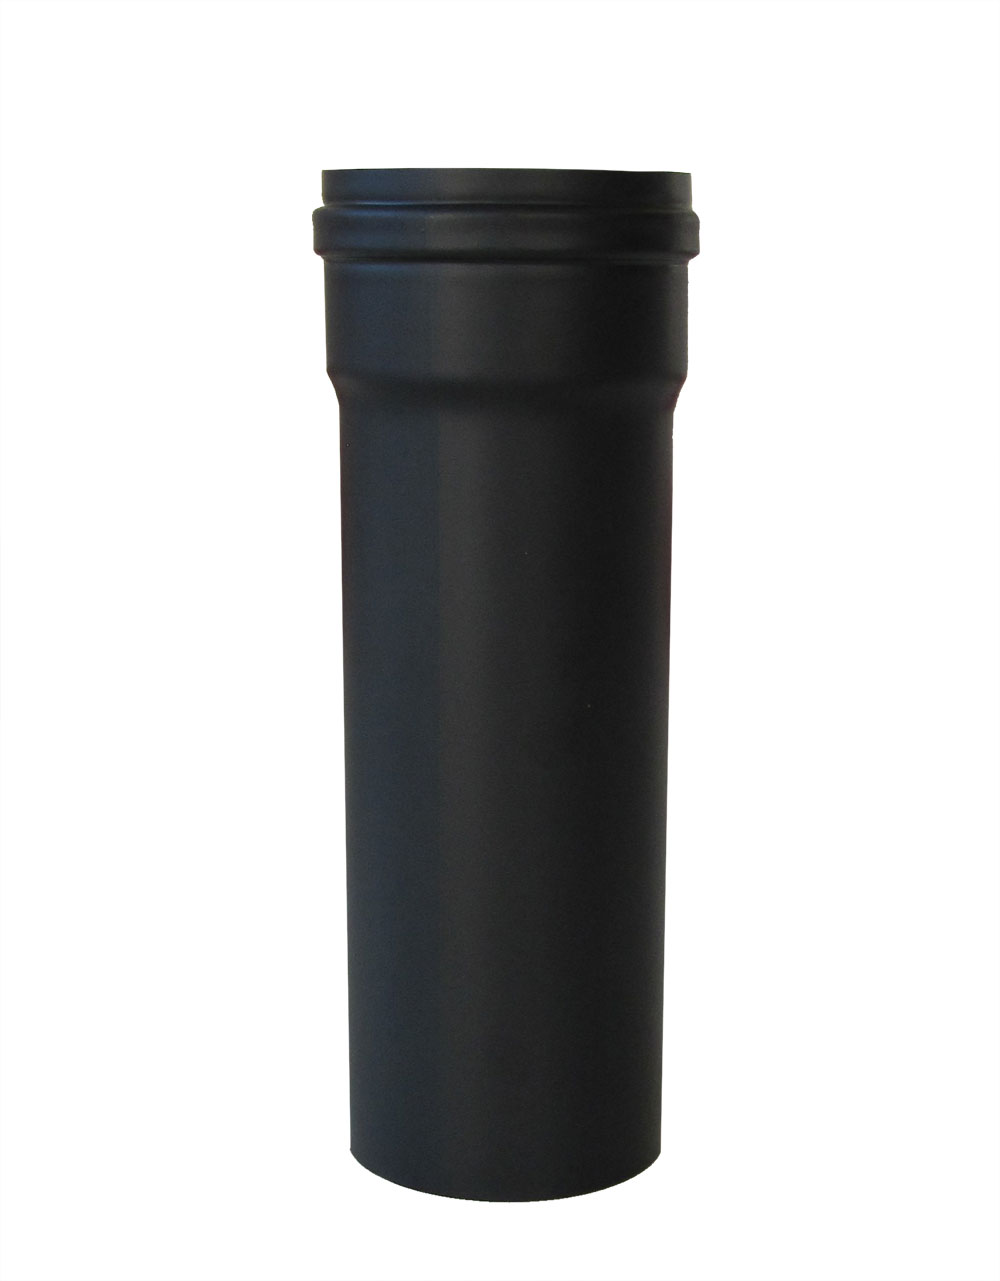 Ofenrohr für Pelletofen Senotherm 0,8mm schwarz Ø100mm Länge 250mm